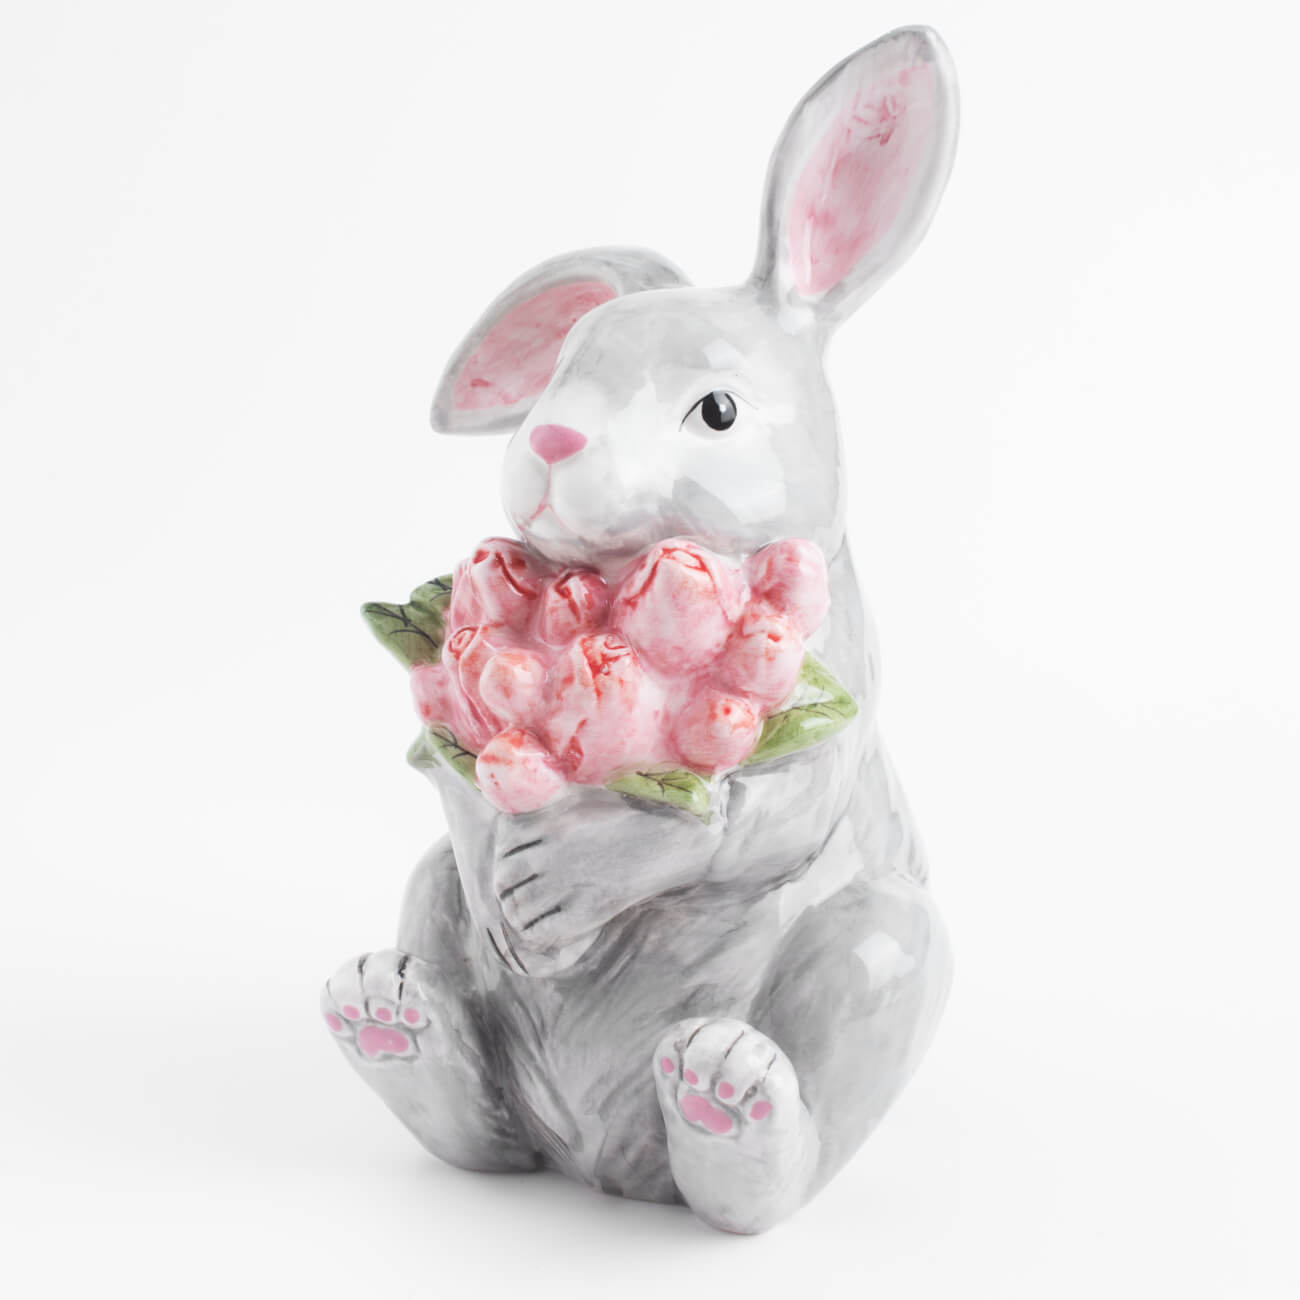 Статуэтка, 23 см, керамика, серая, Кролик с тюльпанами, Pure Easter статуэтка 17 см фарфор p белая кролик с корзиной ов pure easter